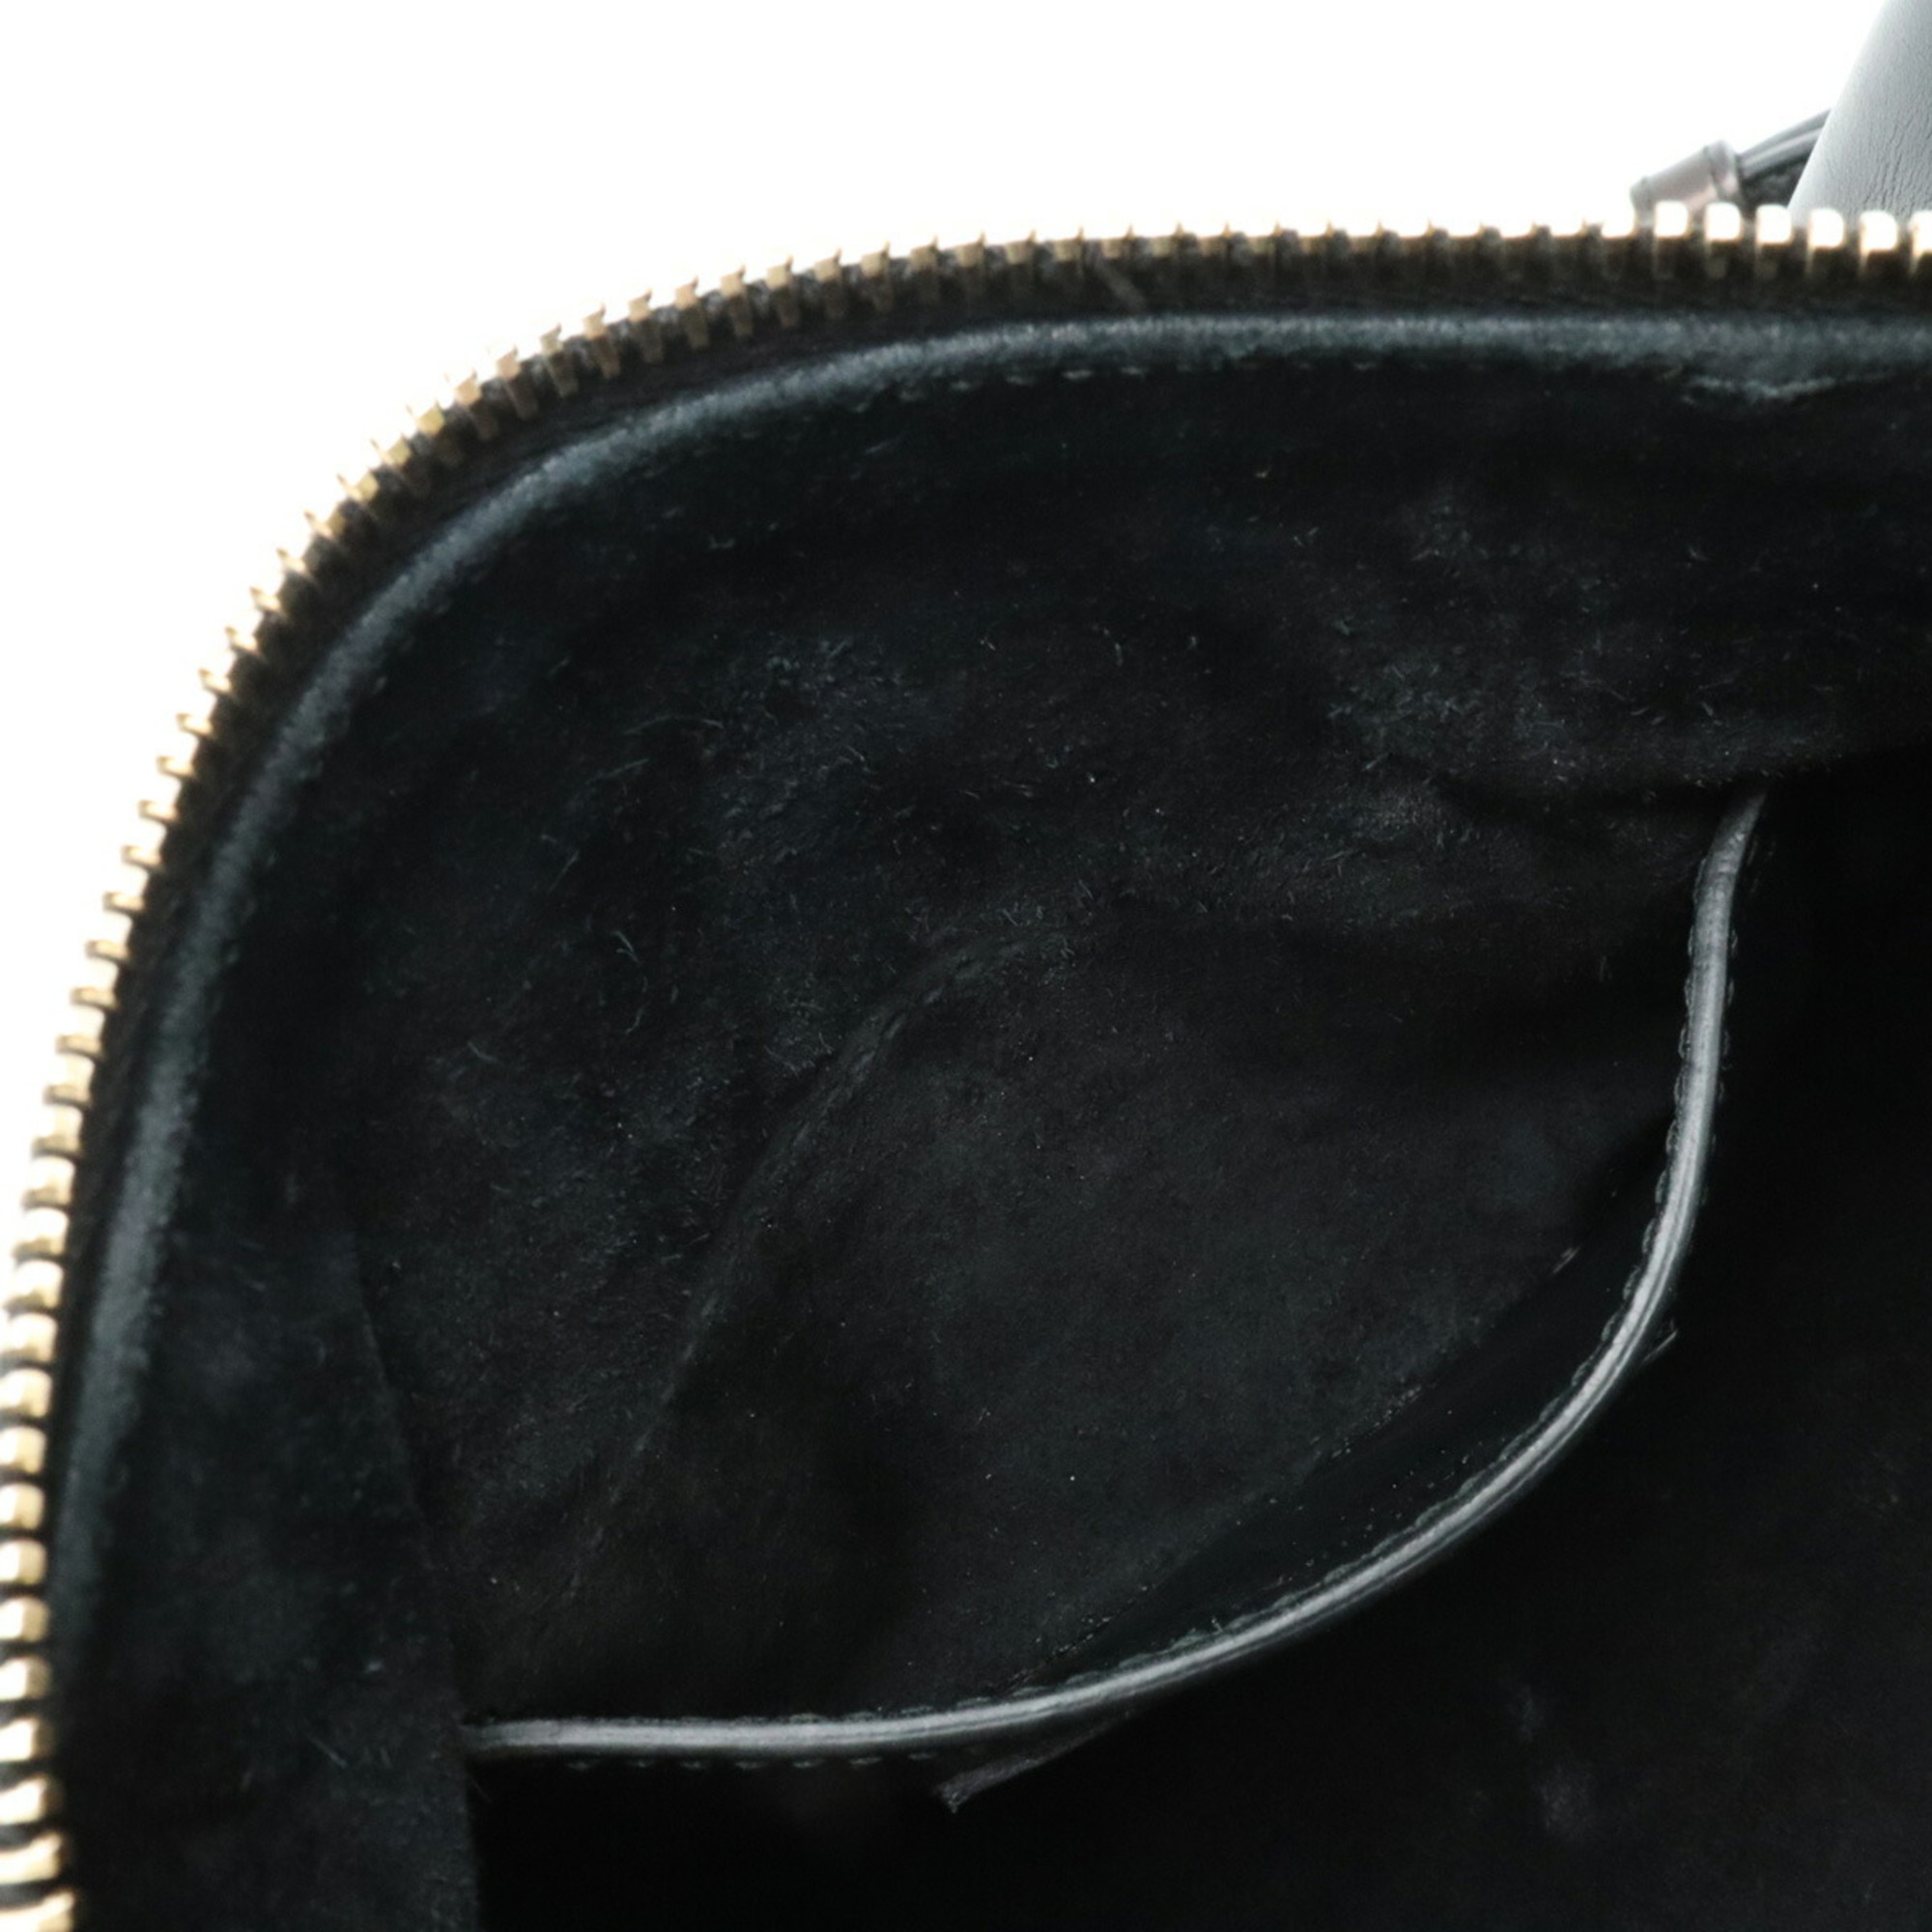 SAINT LAURENT PARIS YSL Yves Saint Laurent Baby Duffle Handbag Shoulder Leather Black 330958